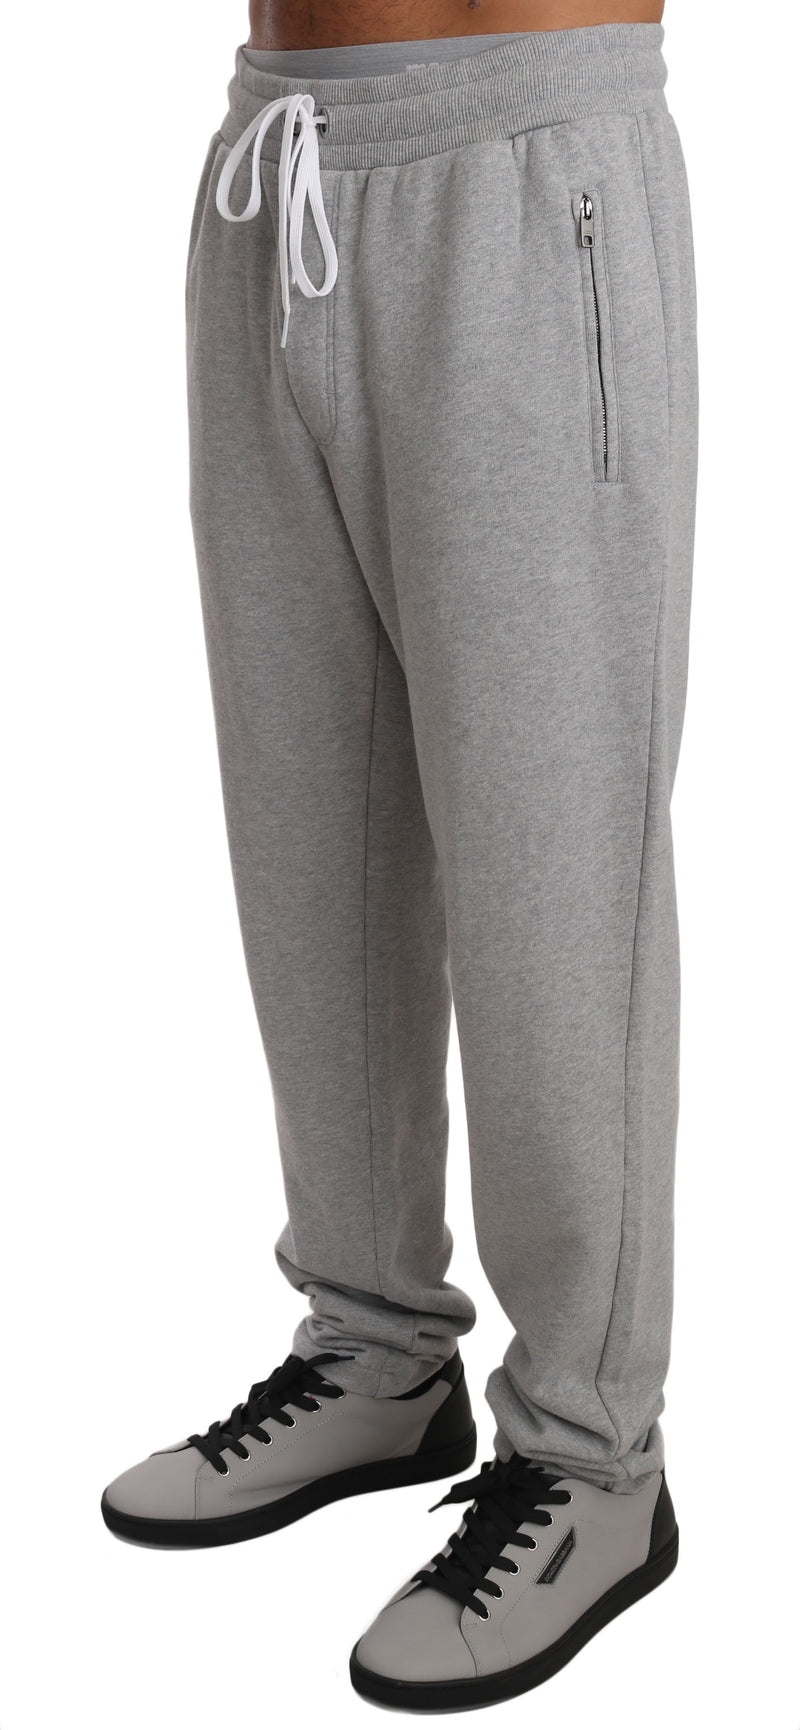 Gray Cotton #DGLovesLondon Sweatpants Pants